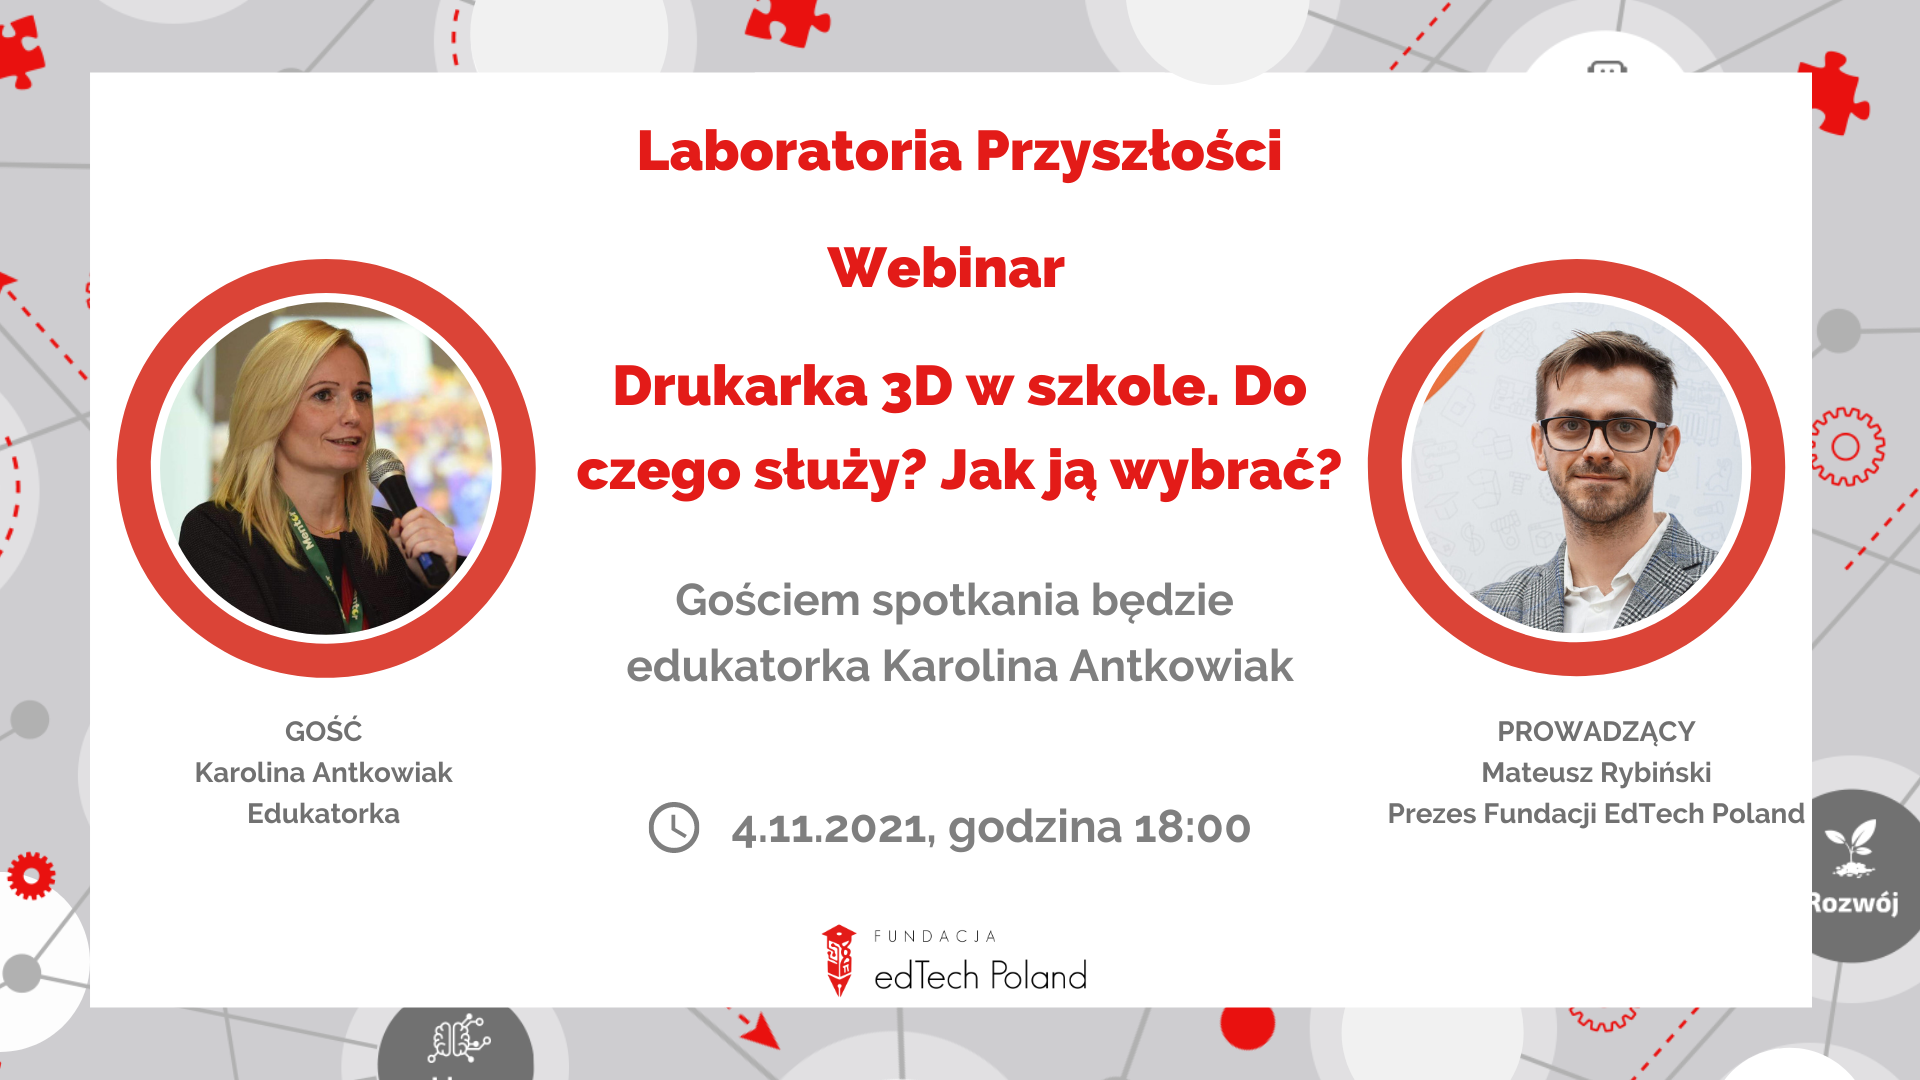 Webinar z Karoliną Antkowiak: Laboratoria Przyszłości - Drukarka 3D w szkole. Do czego służy? Jak wybrać?